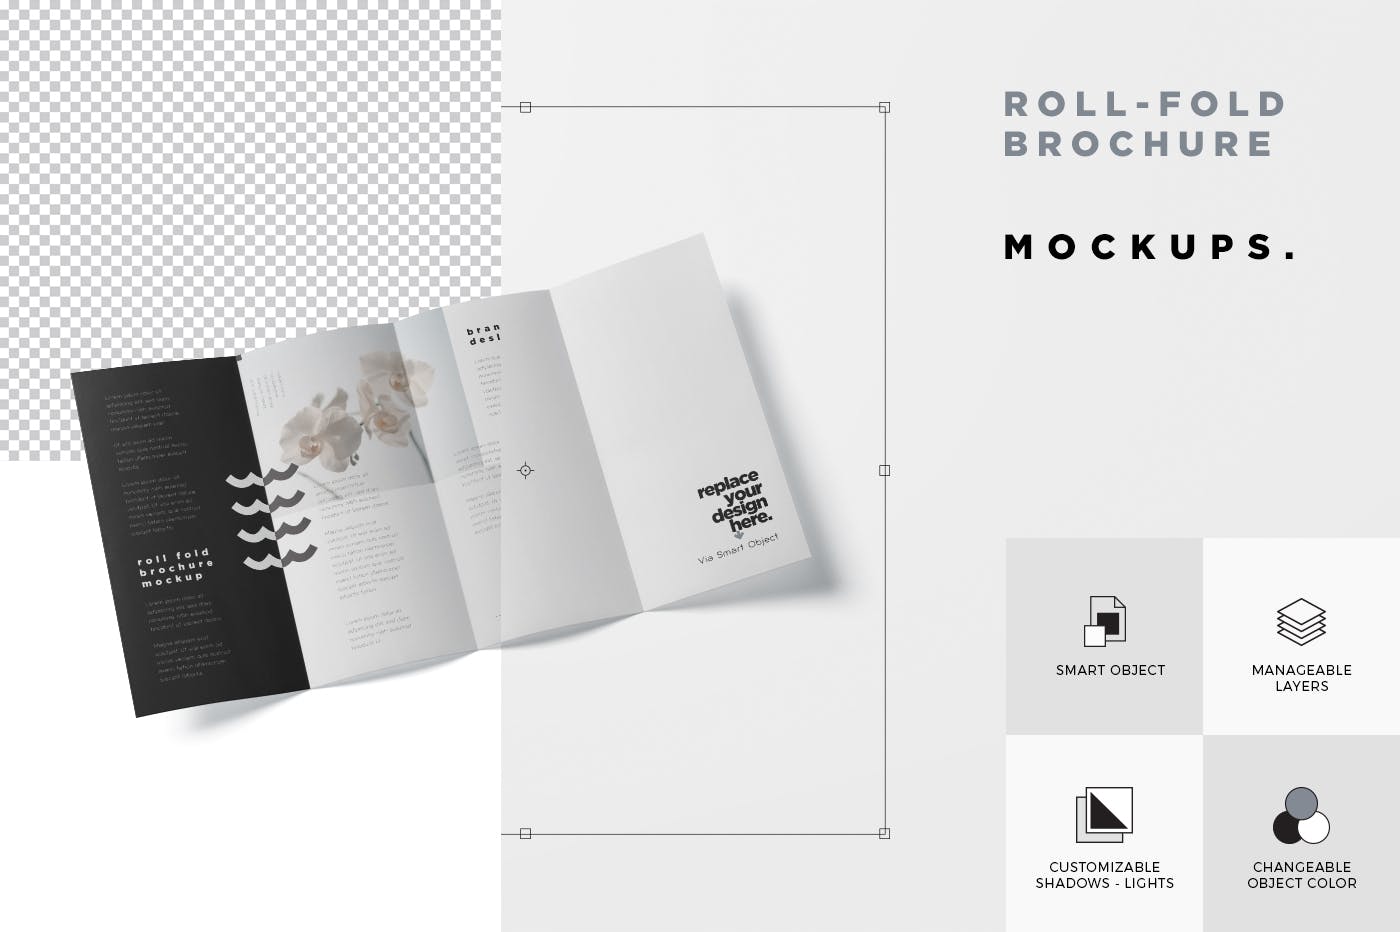 折叠设计风格企业传单/宣传册设计样机16图库精选 Roll-Fold Brochure Mockup – DL DIN Lang Size插图(6)